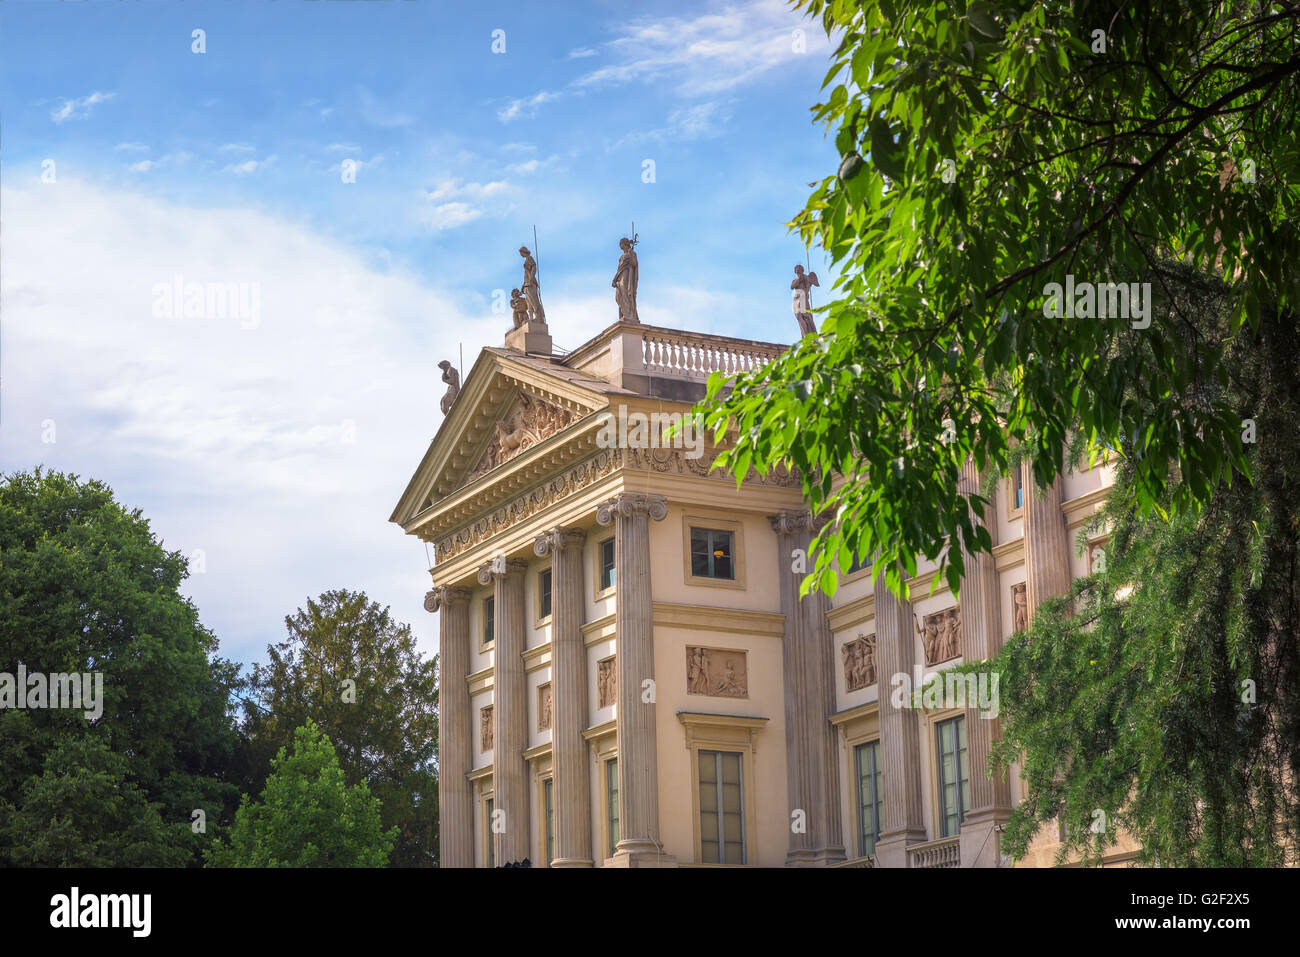 Villa Reale, Milan, Italie ; voir de beaux palais néoclassique. Banque D'Images